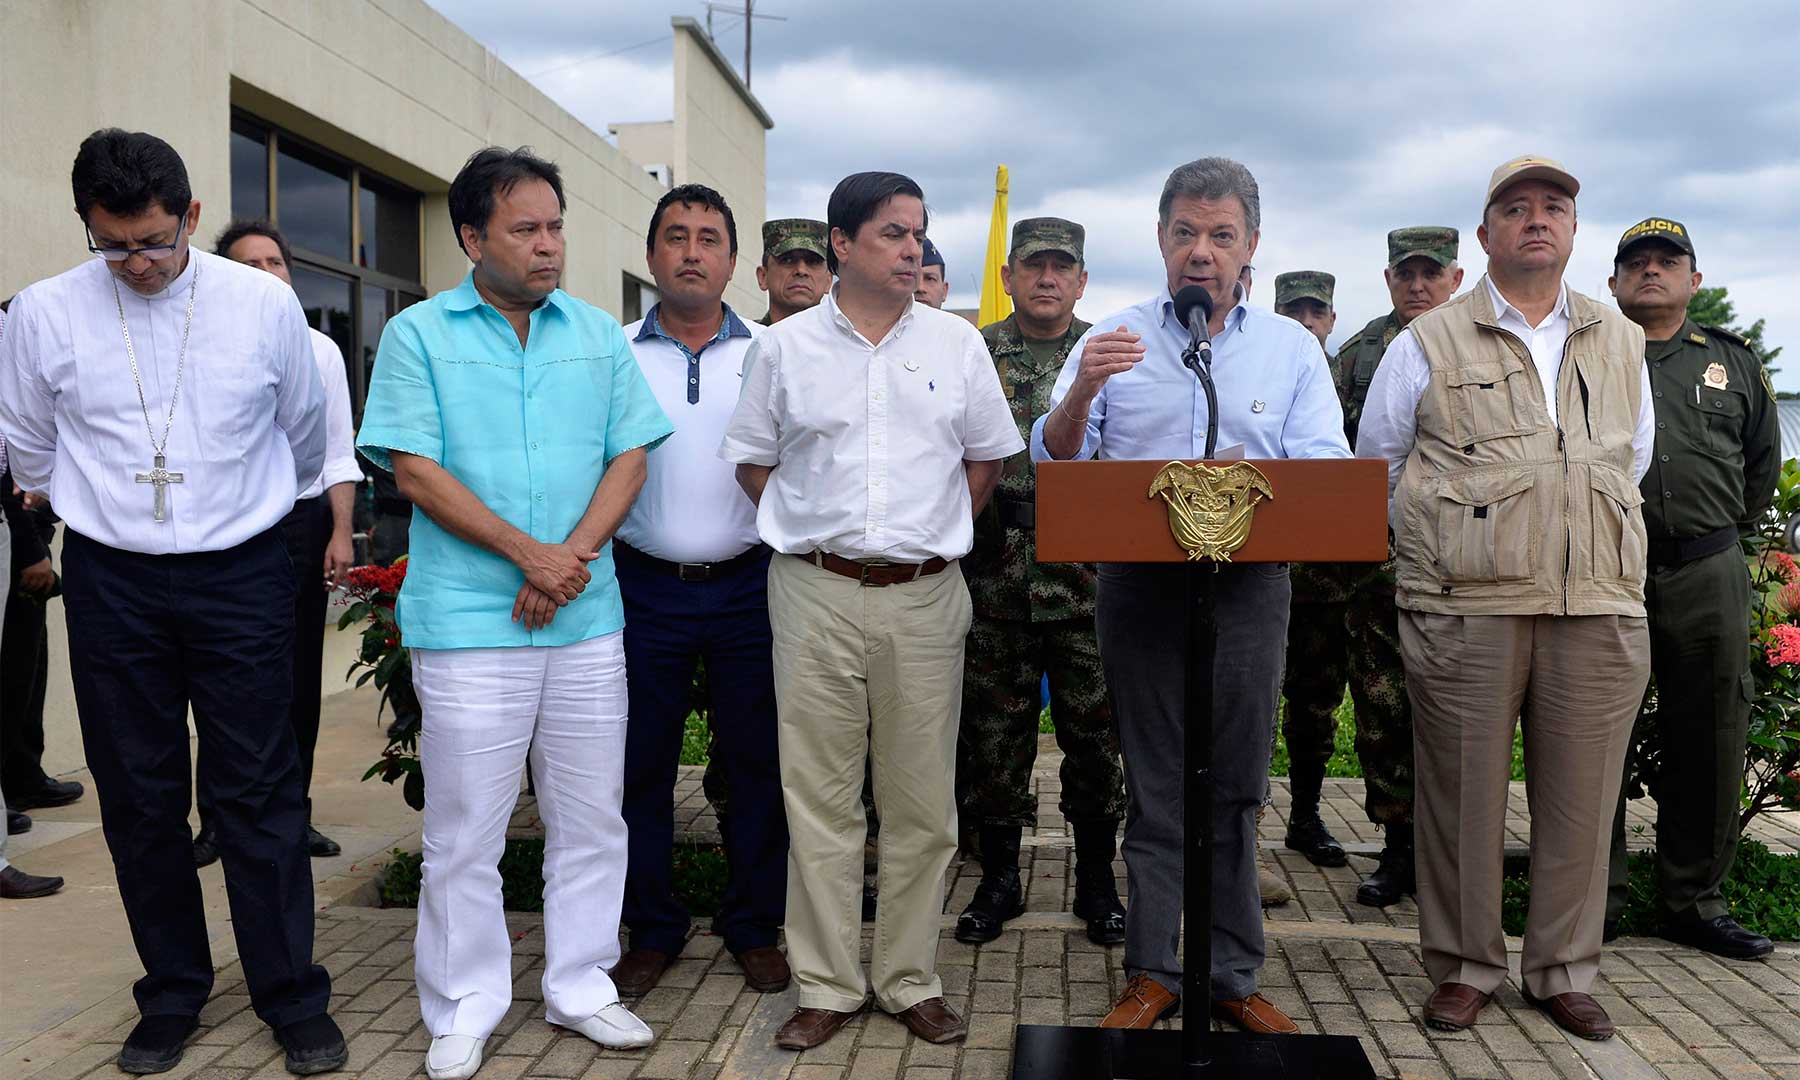 No activaremos mesa de negociaciones hasta que el ELN libere a todos los secuestrados y renuncie a este crimen: Presidente Santos